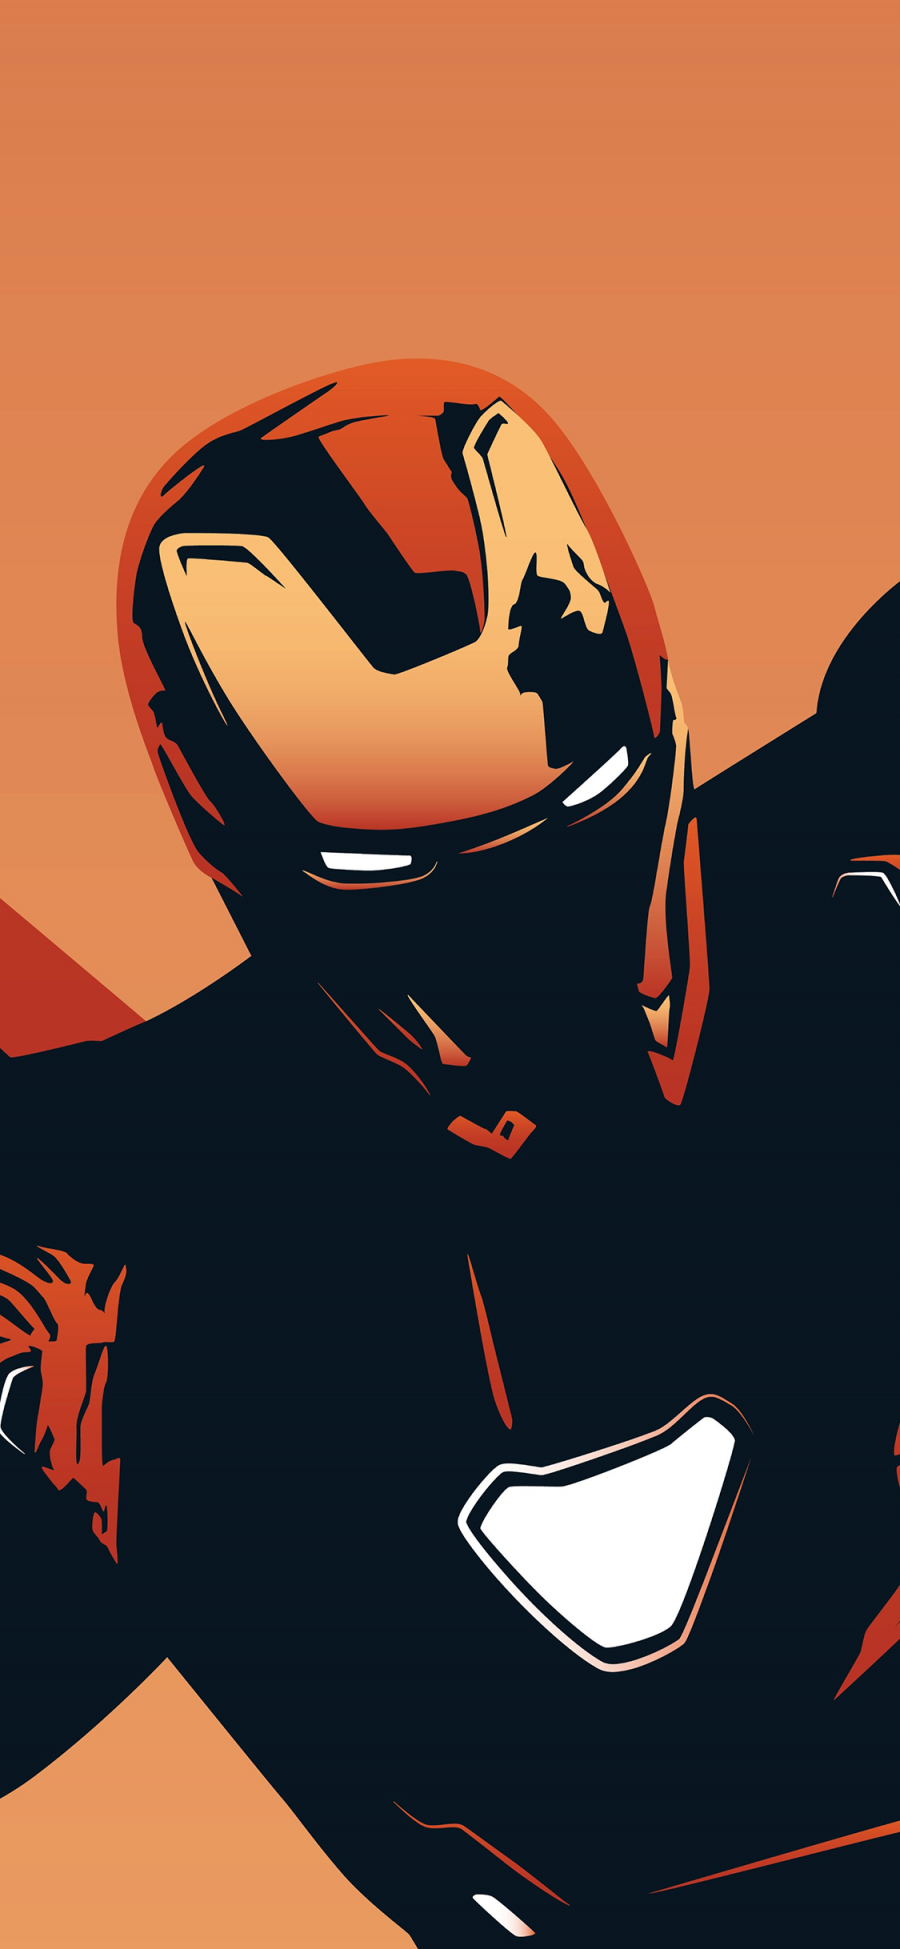 [2436×1125]钢铁侠 漫威 超级英雄 漫画 欧美 复仇者联盟 苹果手机动漫壁纸图片